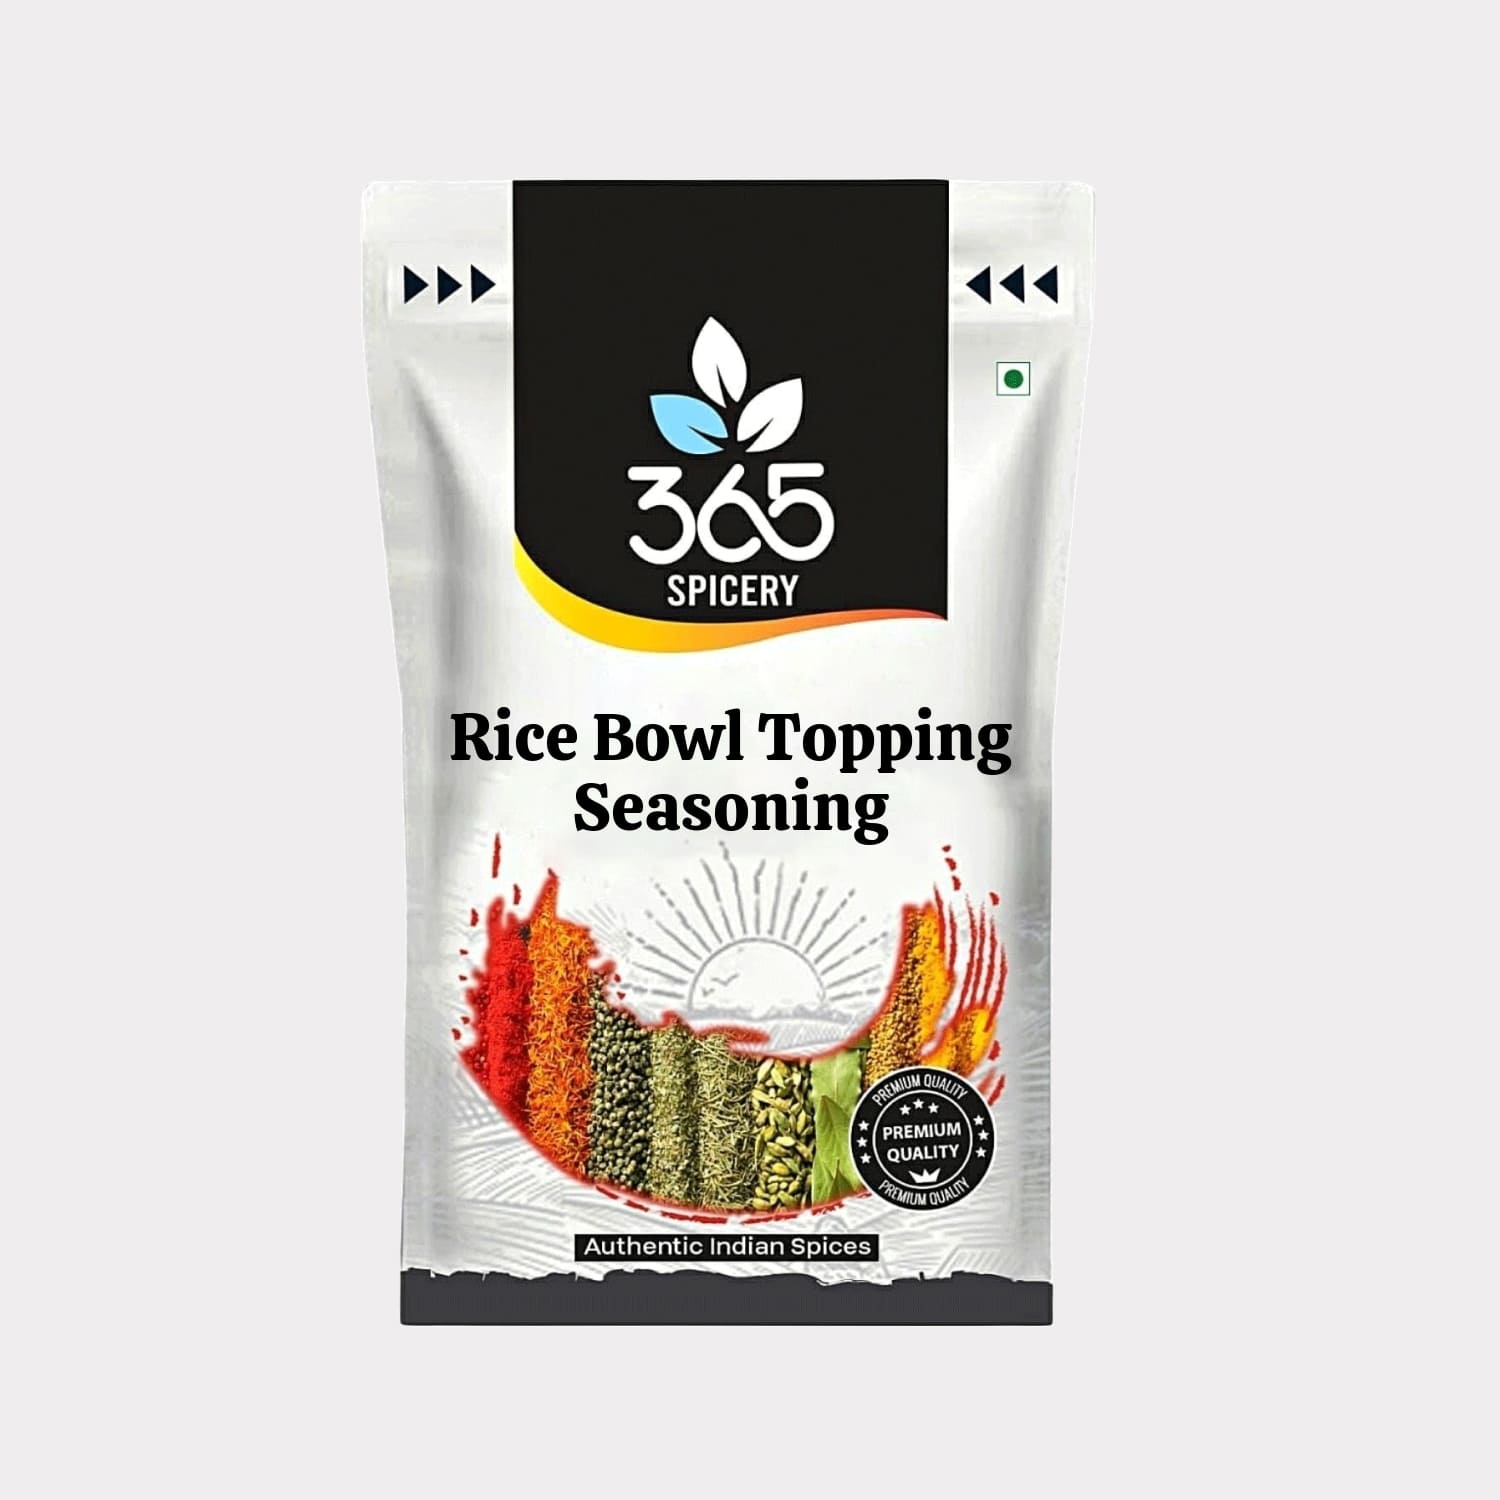 Rice Bowl Topping Seasoning